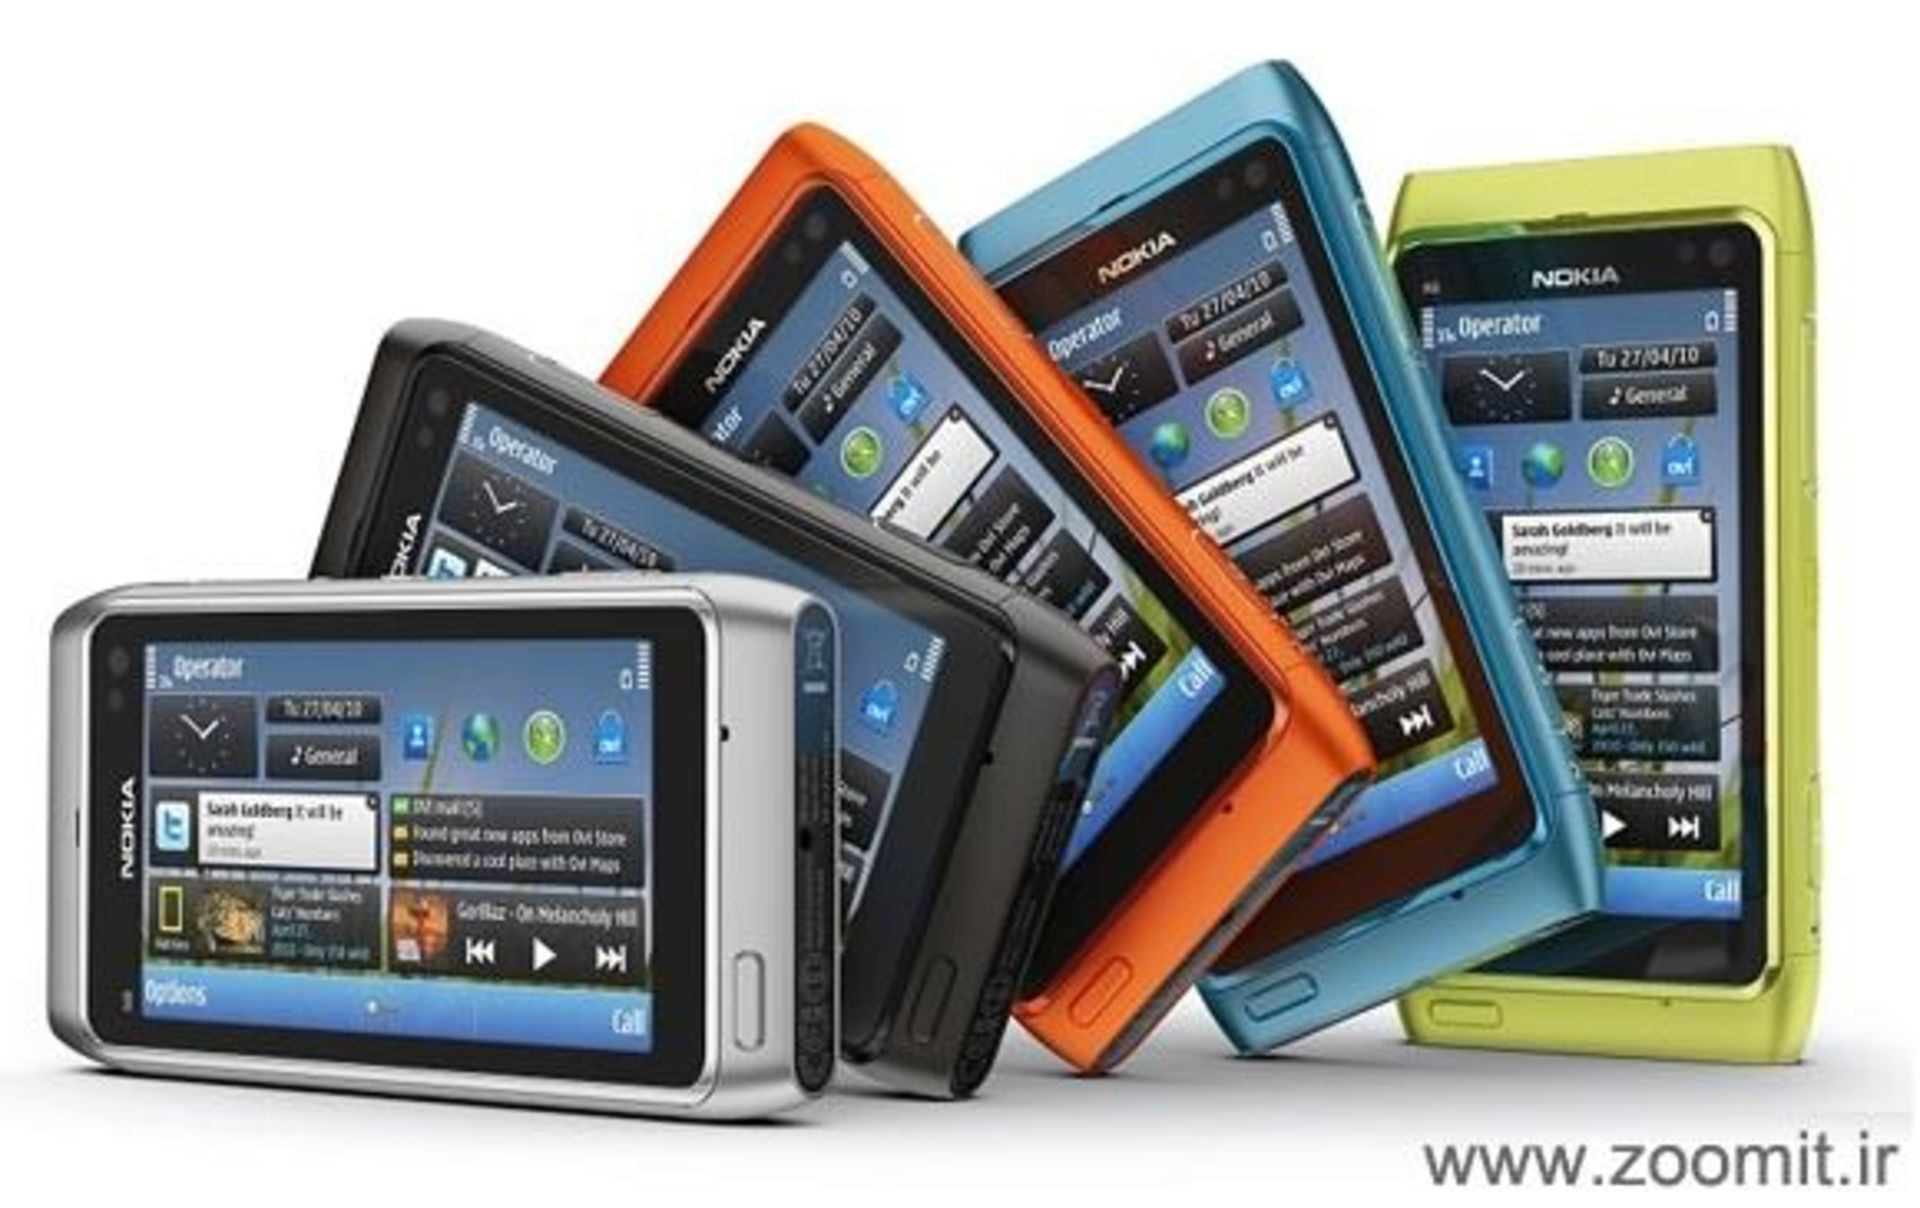 مرجع متخصصين ايران Nokia N8 